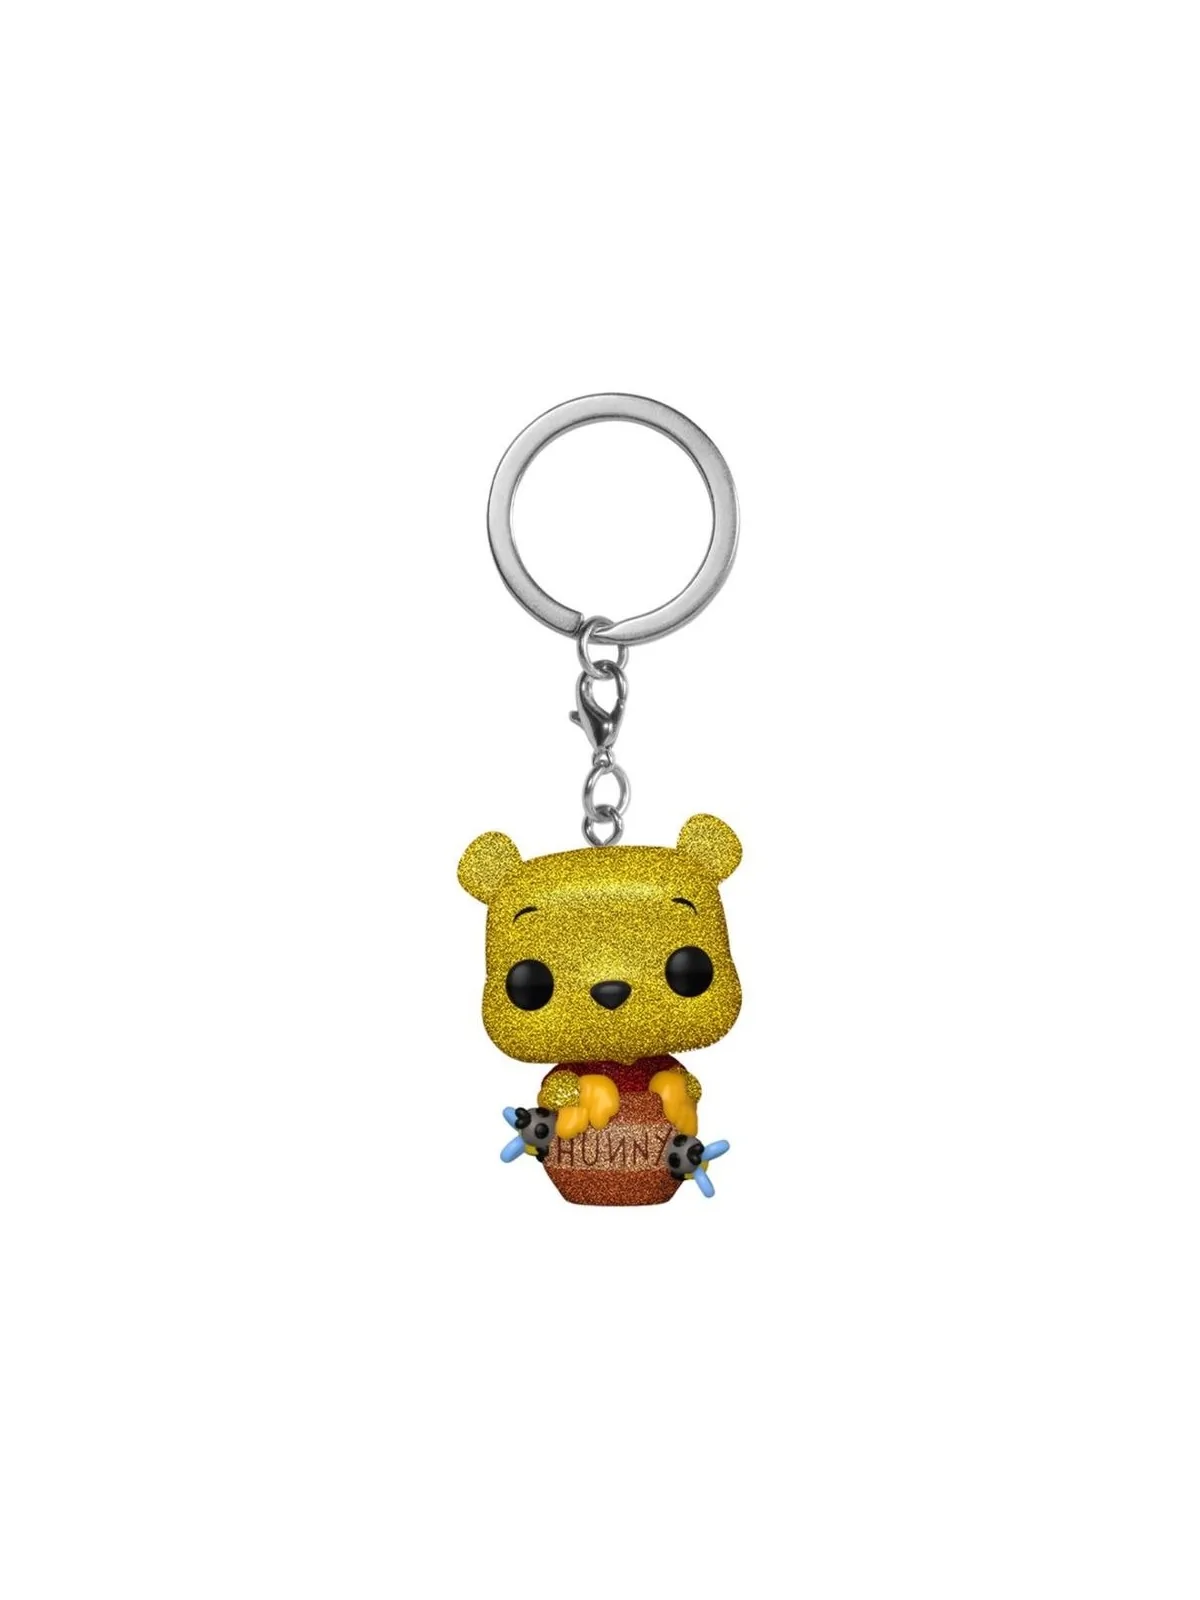 Comprar Llavero Funko POP! Disney: Winnie the Pooh barato al mejor pre